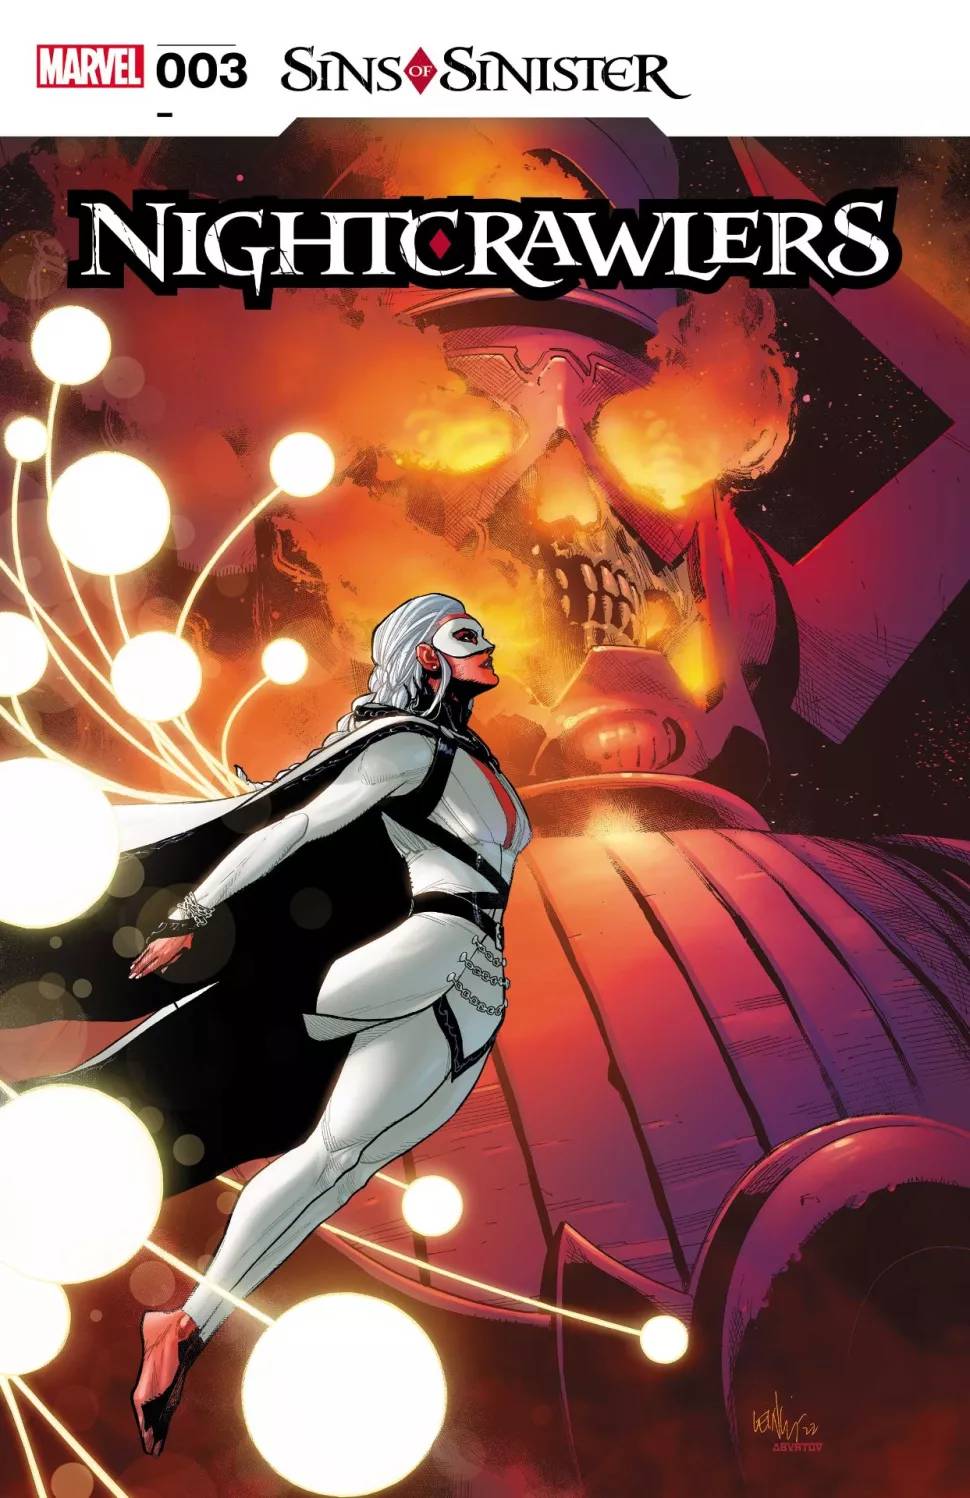 Quais são os Pecados de Sinistro - X-Men - Marvel Comics - Nightcrawlers #3 - Blog Farofeiros